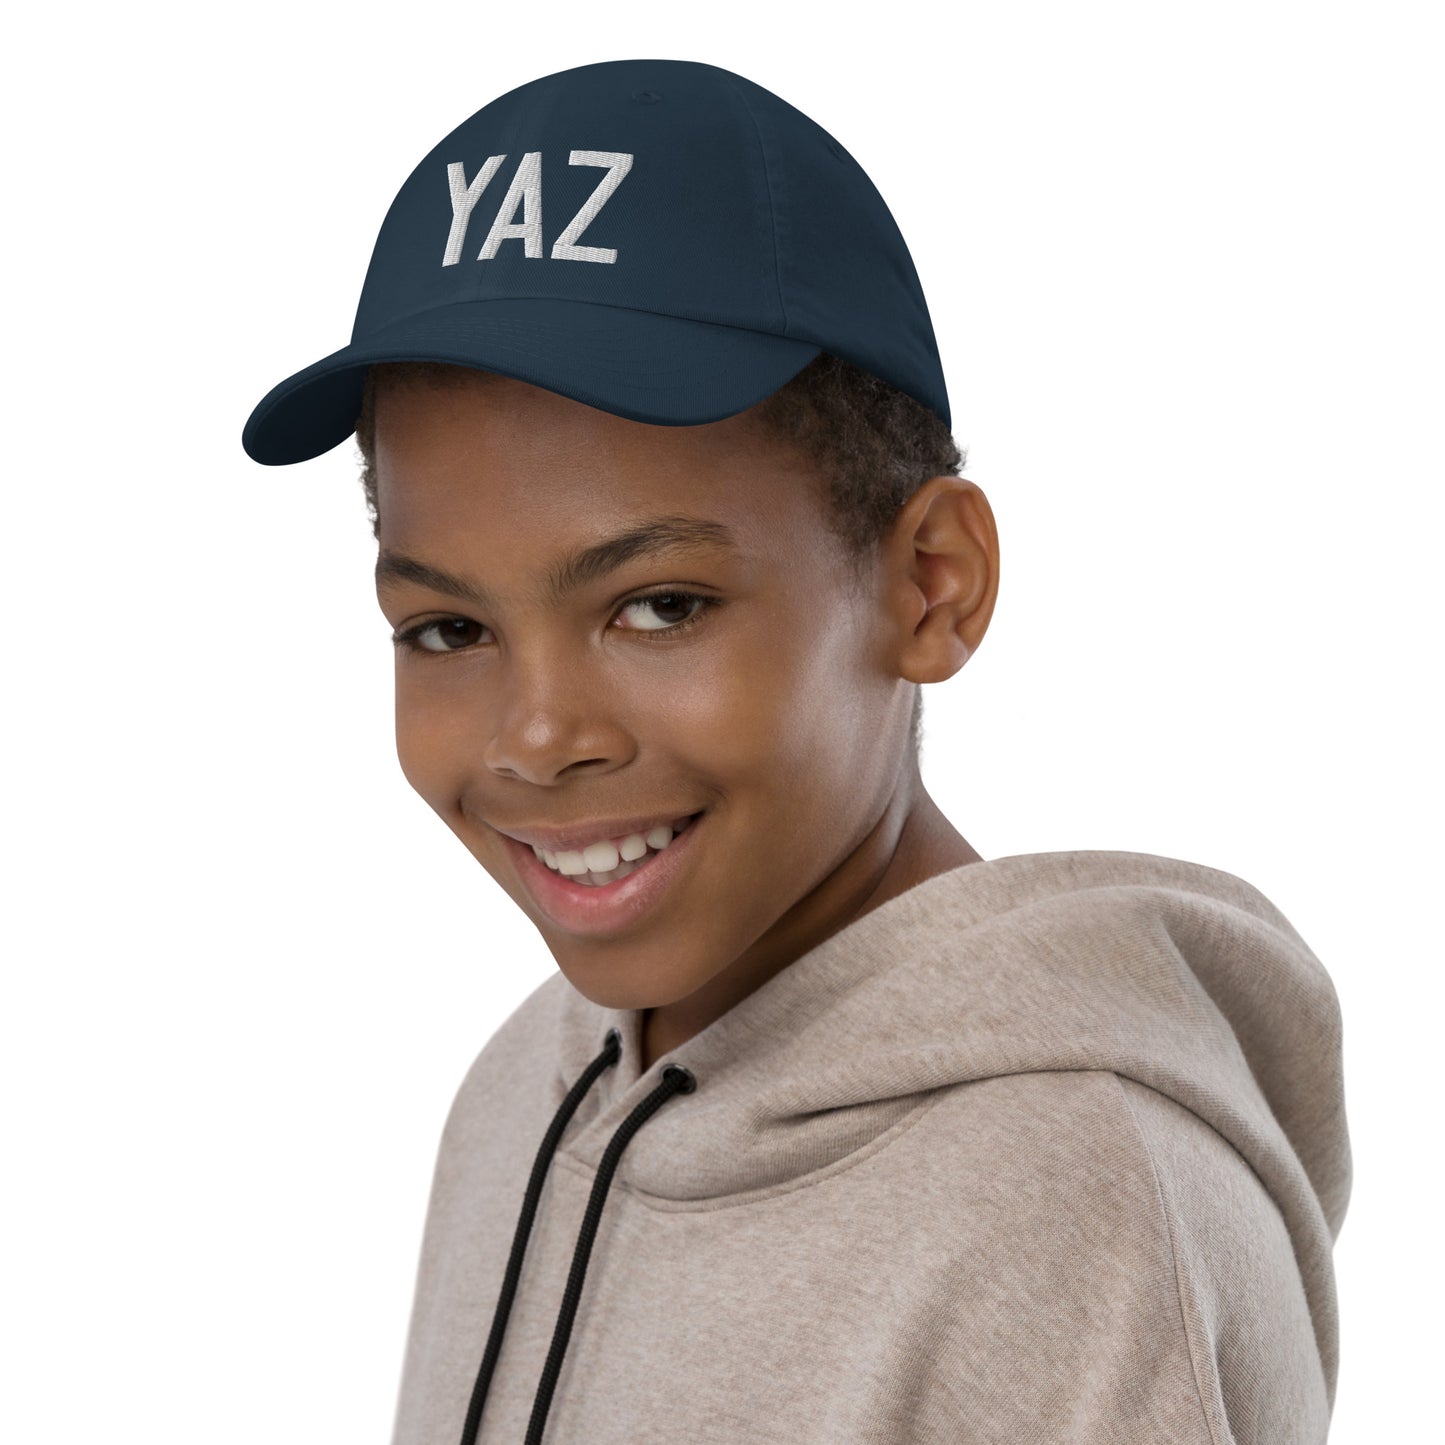 Airport Code Kid's Baseball Cap - White • YAZ Tofino • YHM Designs - Image 03